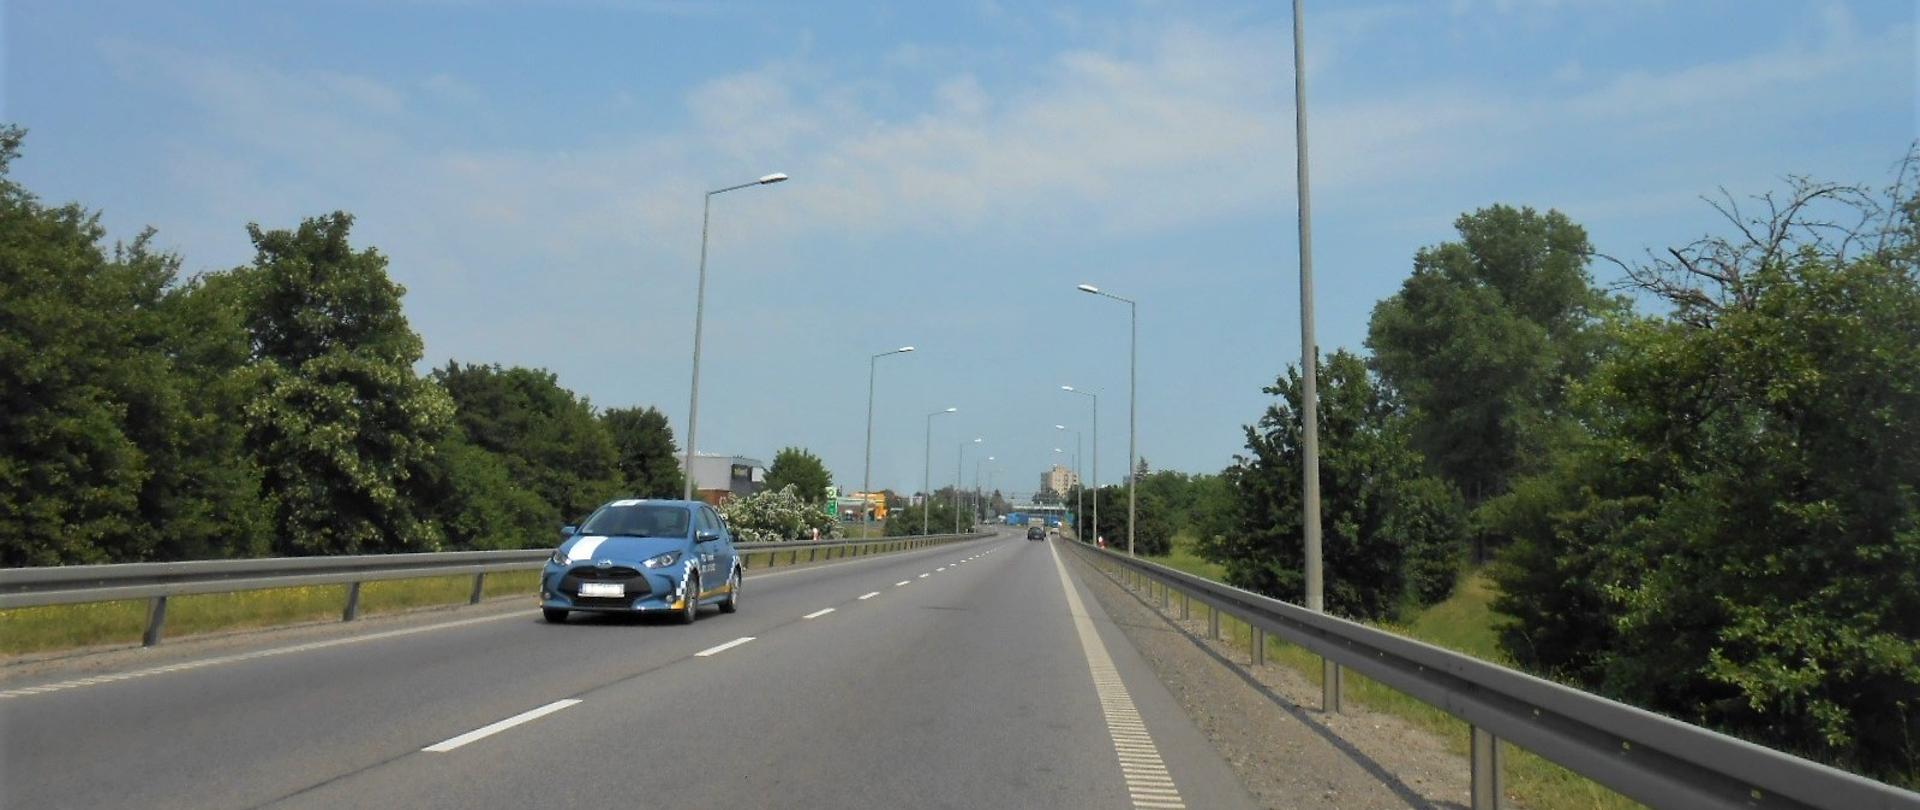 Zdjęcie przedstawia drogę krajową nr 91 w Tczewie. Na pierwszym planie jest droga z pojazdami, ale brak jest na niej chodnika i ścieżki rowerowej. Po obu stronach drogi są tereny zielone z drzewami.